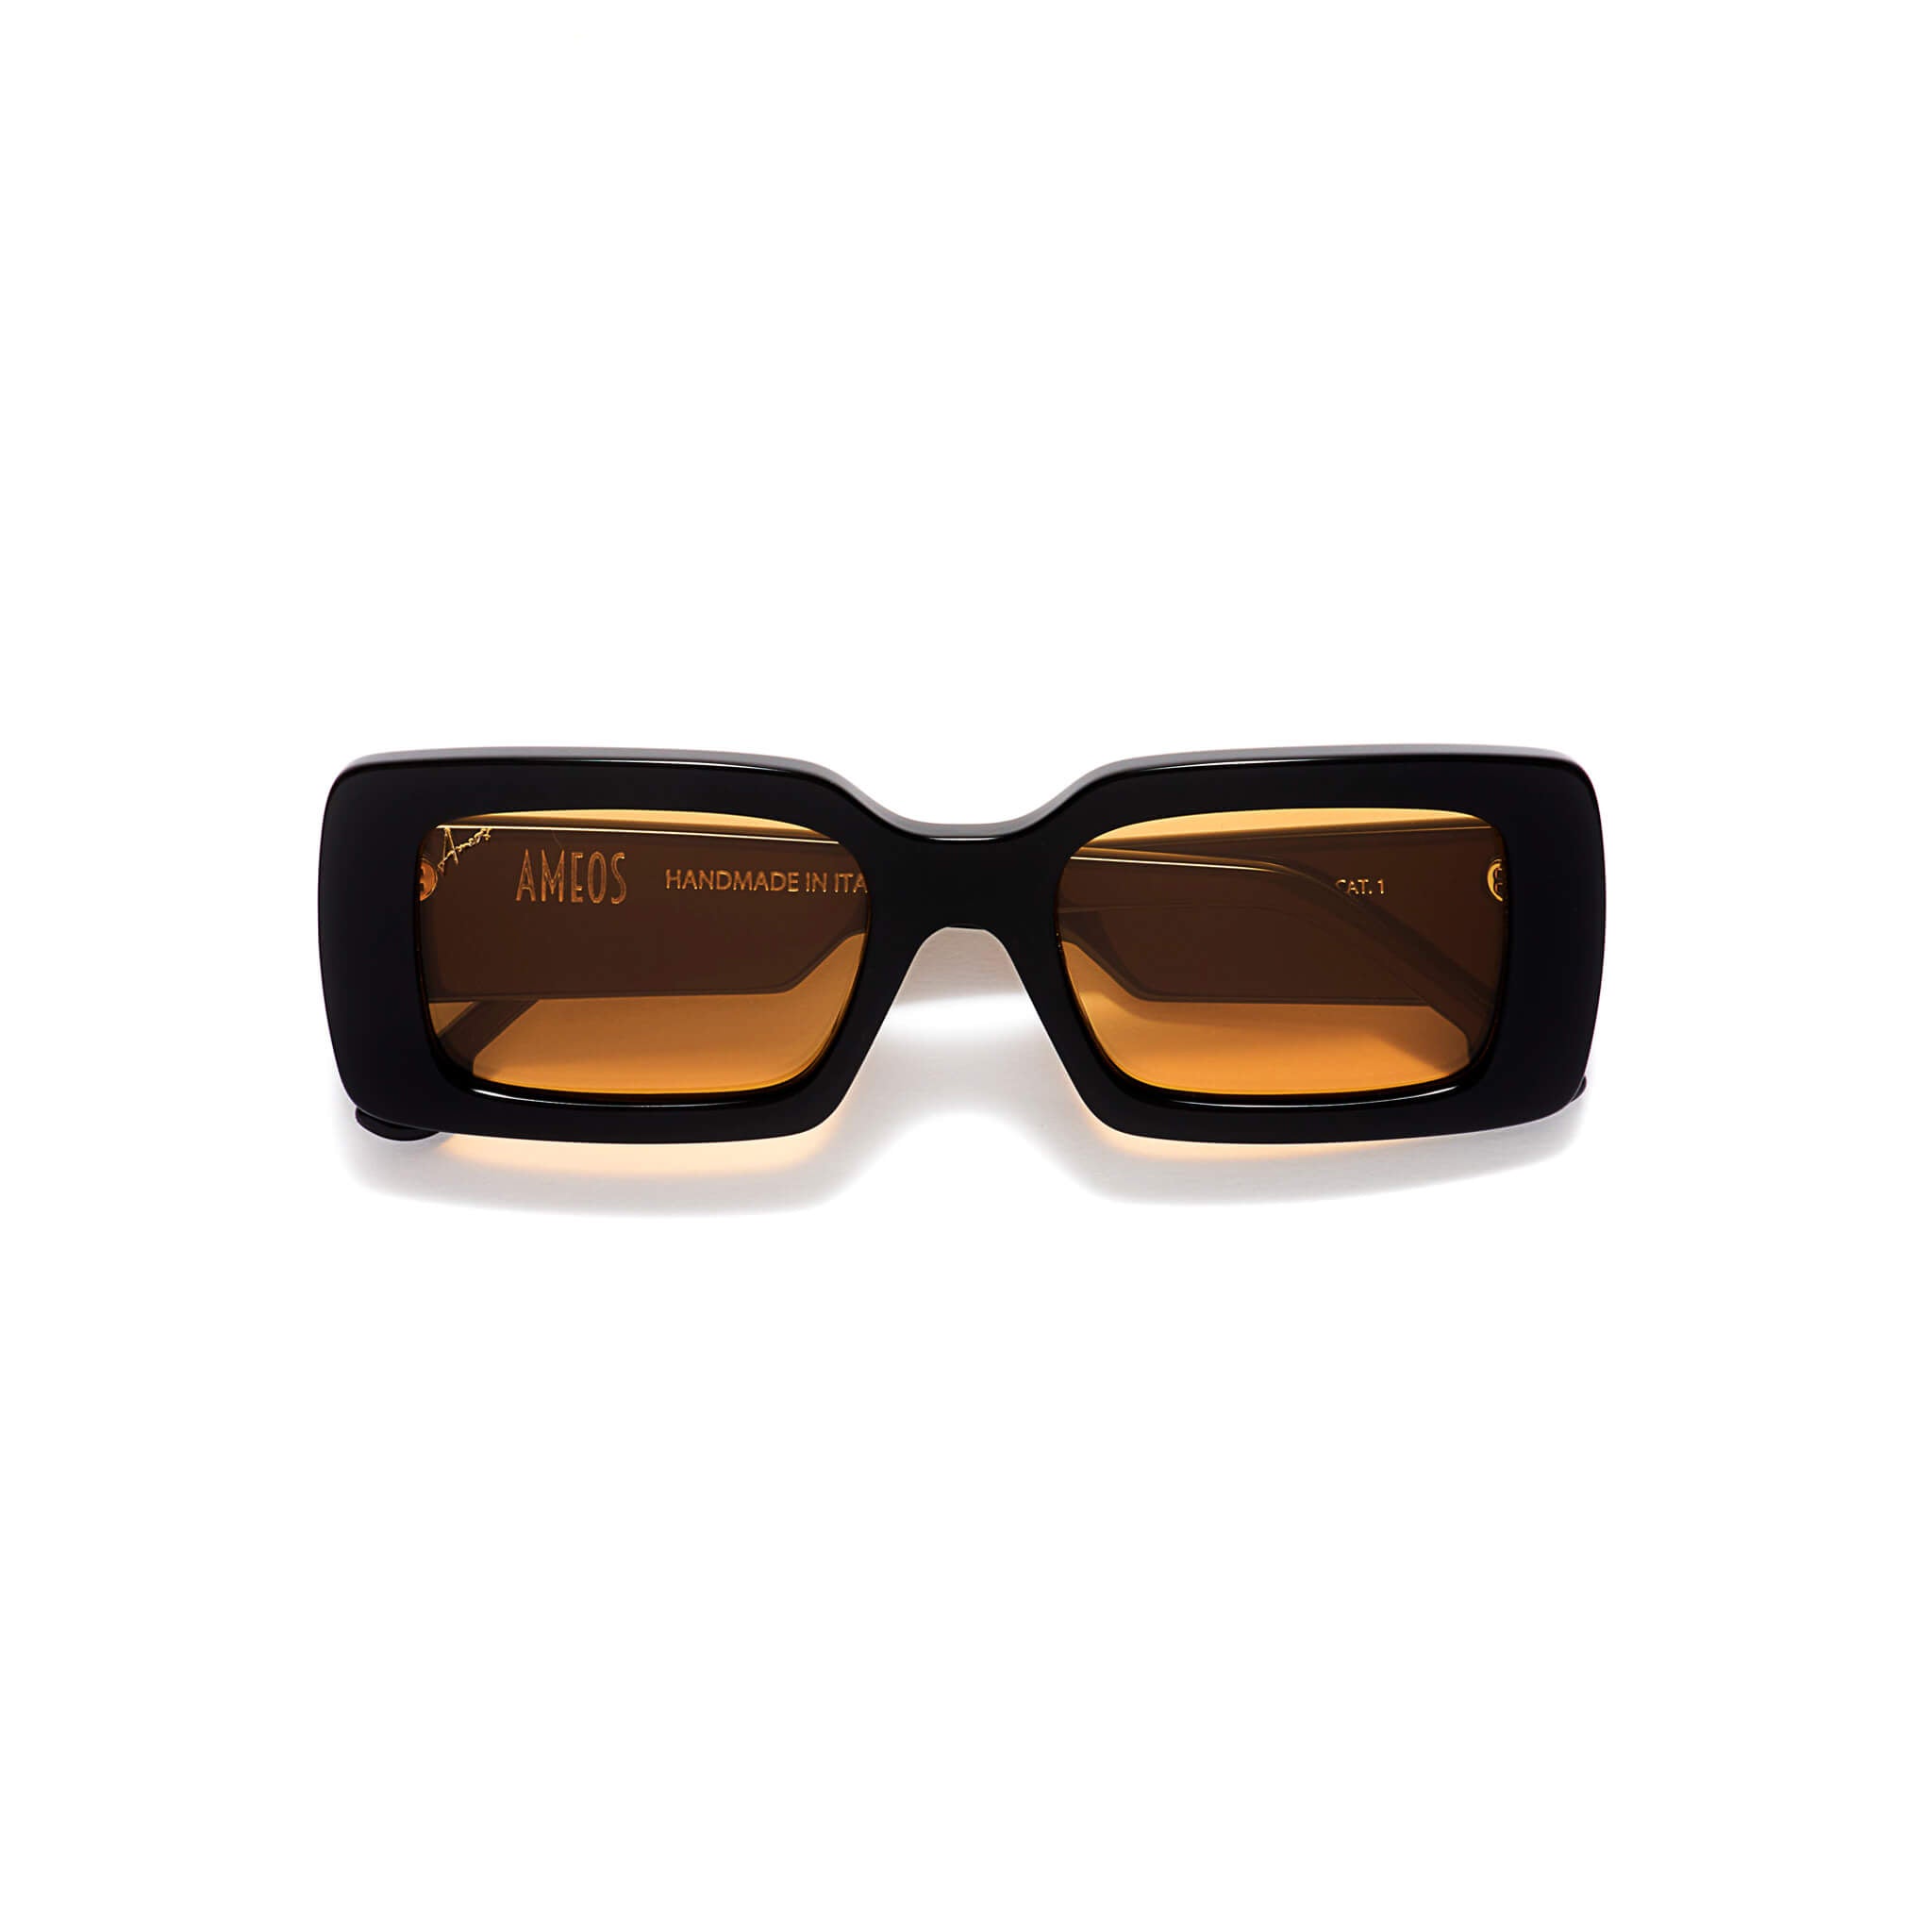 Black rectangular frames with orange lenses sunglasses